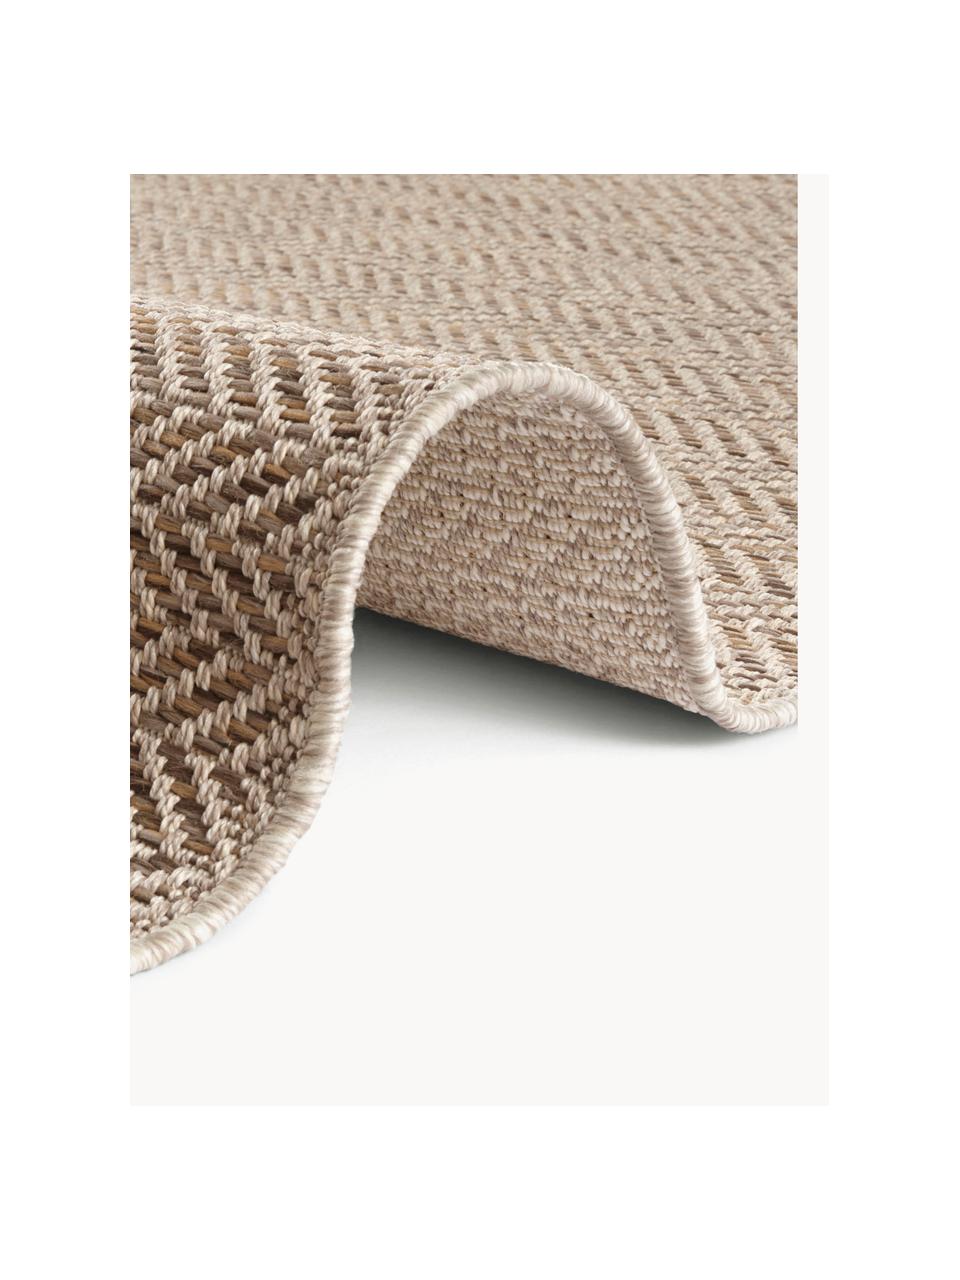 Interiérový/exteriérový koberec Caen, 100 % polypropylen

Materiál použitý v tomto produktu byl testován na škodlivé látky a certifikován podle STANDARD 100 od OEKO-TEX® 1803035, OEKO-TEX Service GmbH., Odstíny béžové, Š 80 cm, D 150 cm (velikost XS)